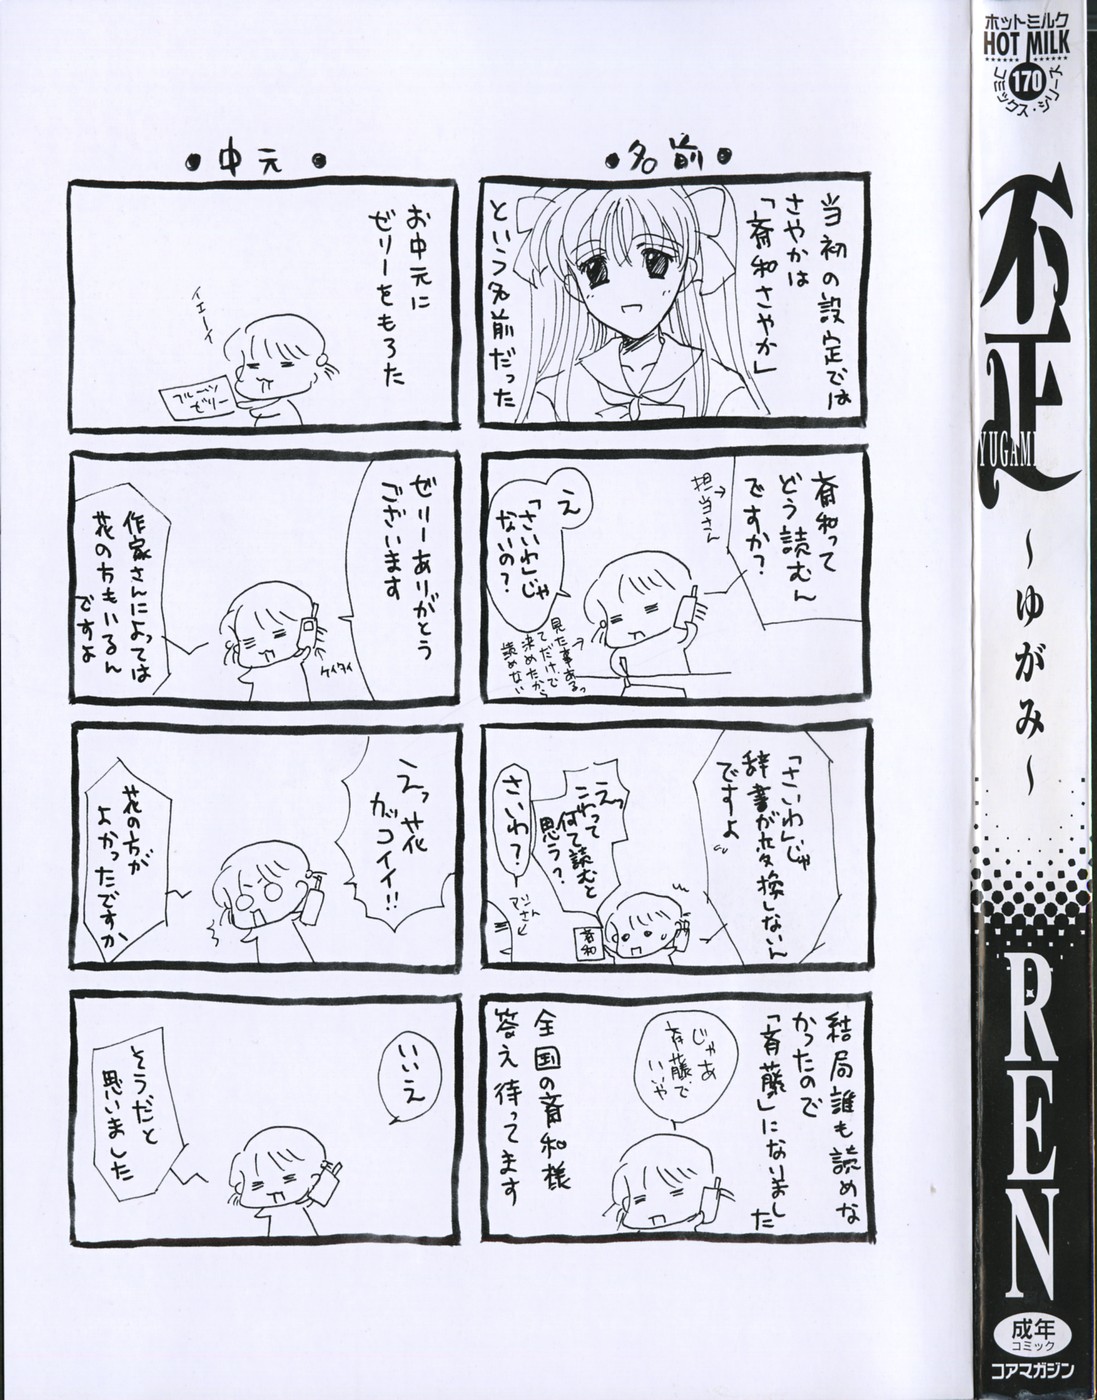 [REN] Yugami page 5 full